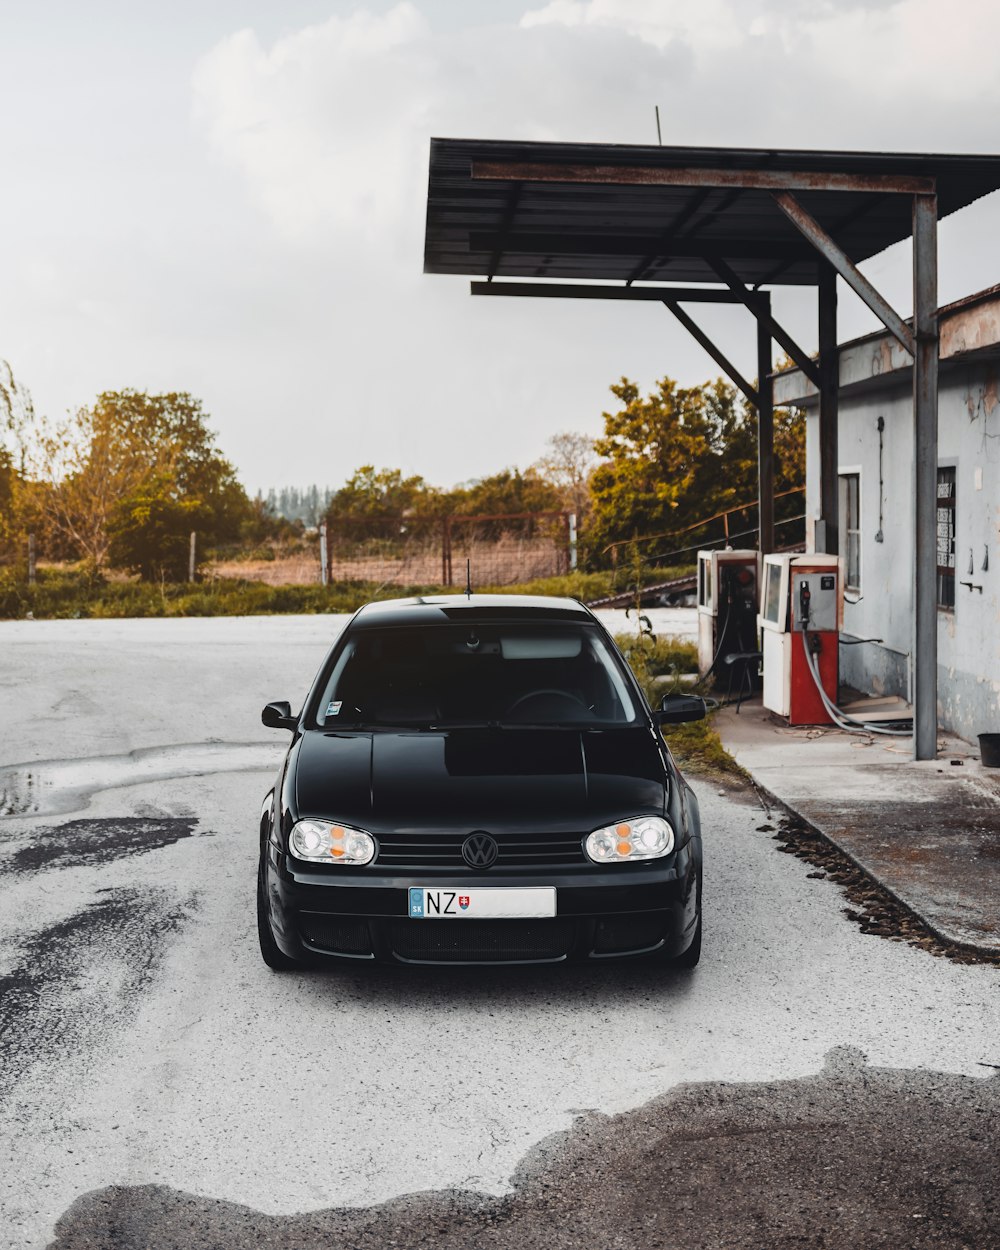 coche Volkswagen negro